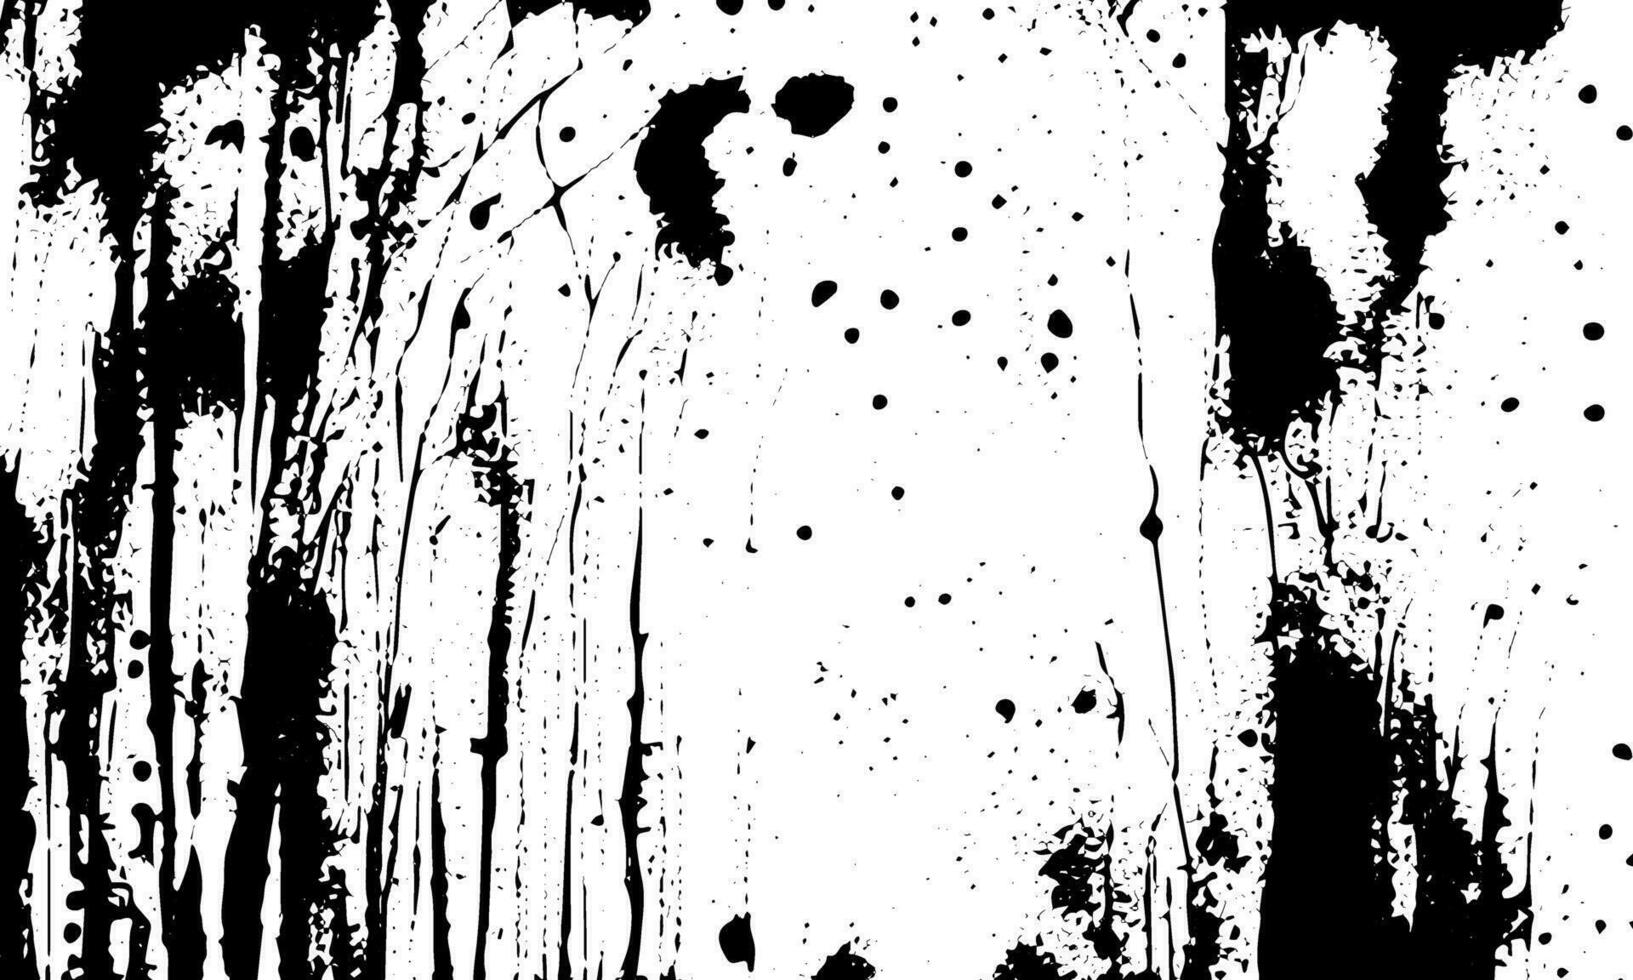 grunge detaljerad svart abstrakt textur. vektor bakgrund